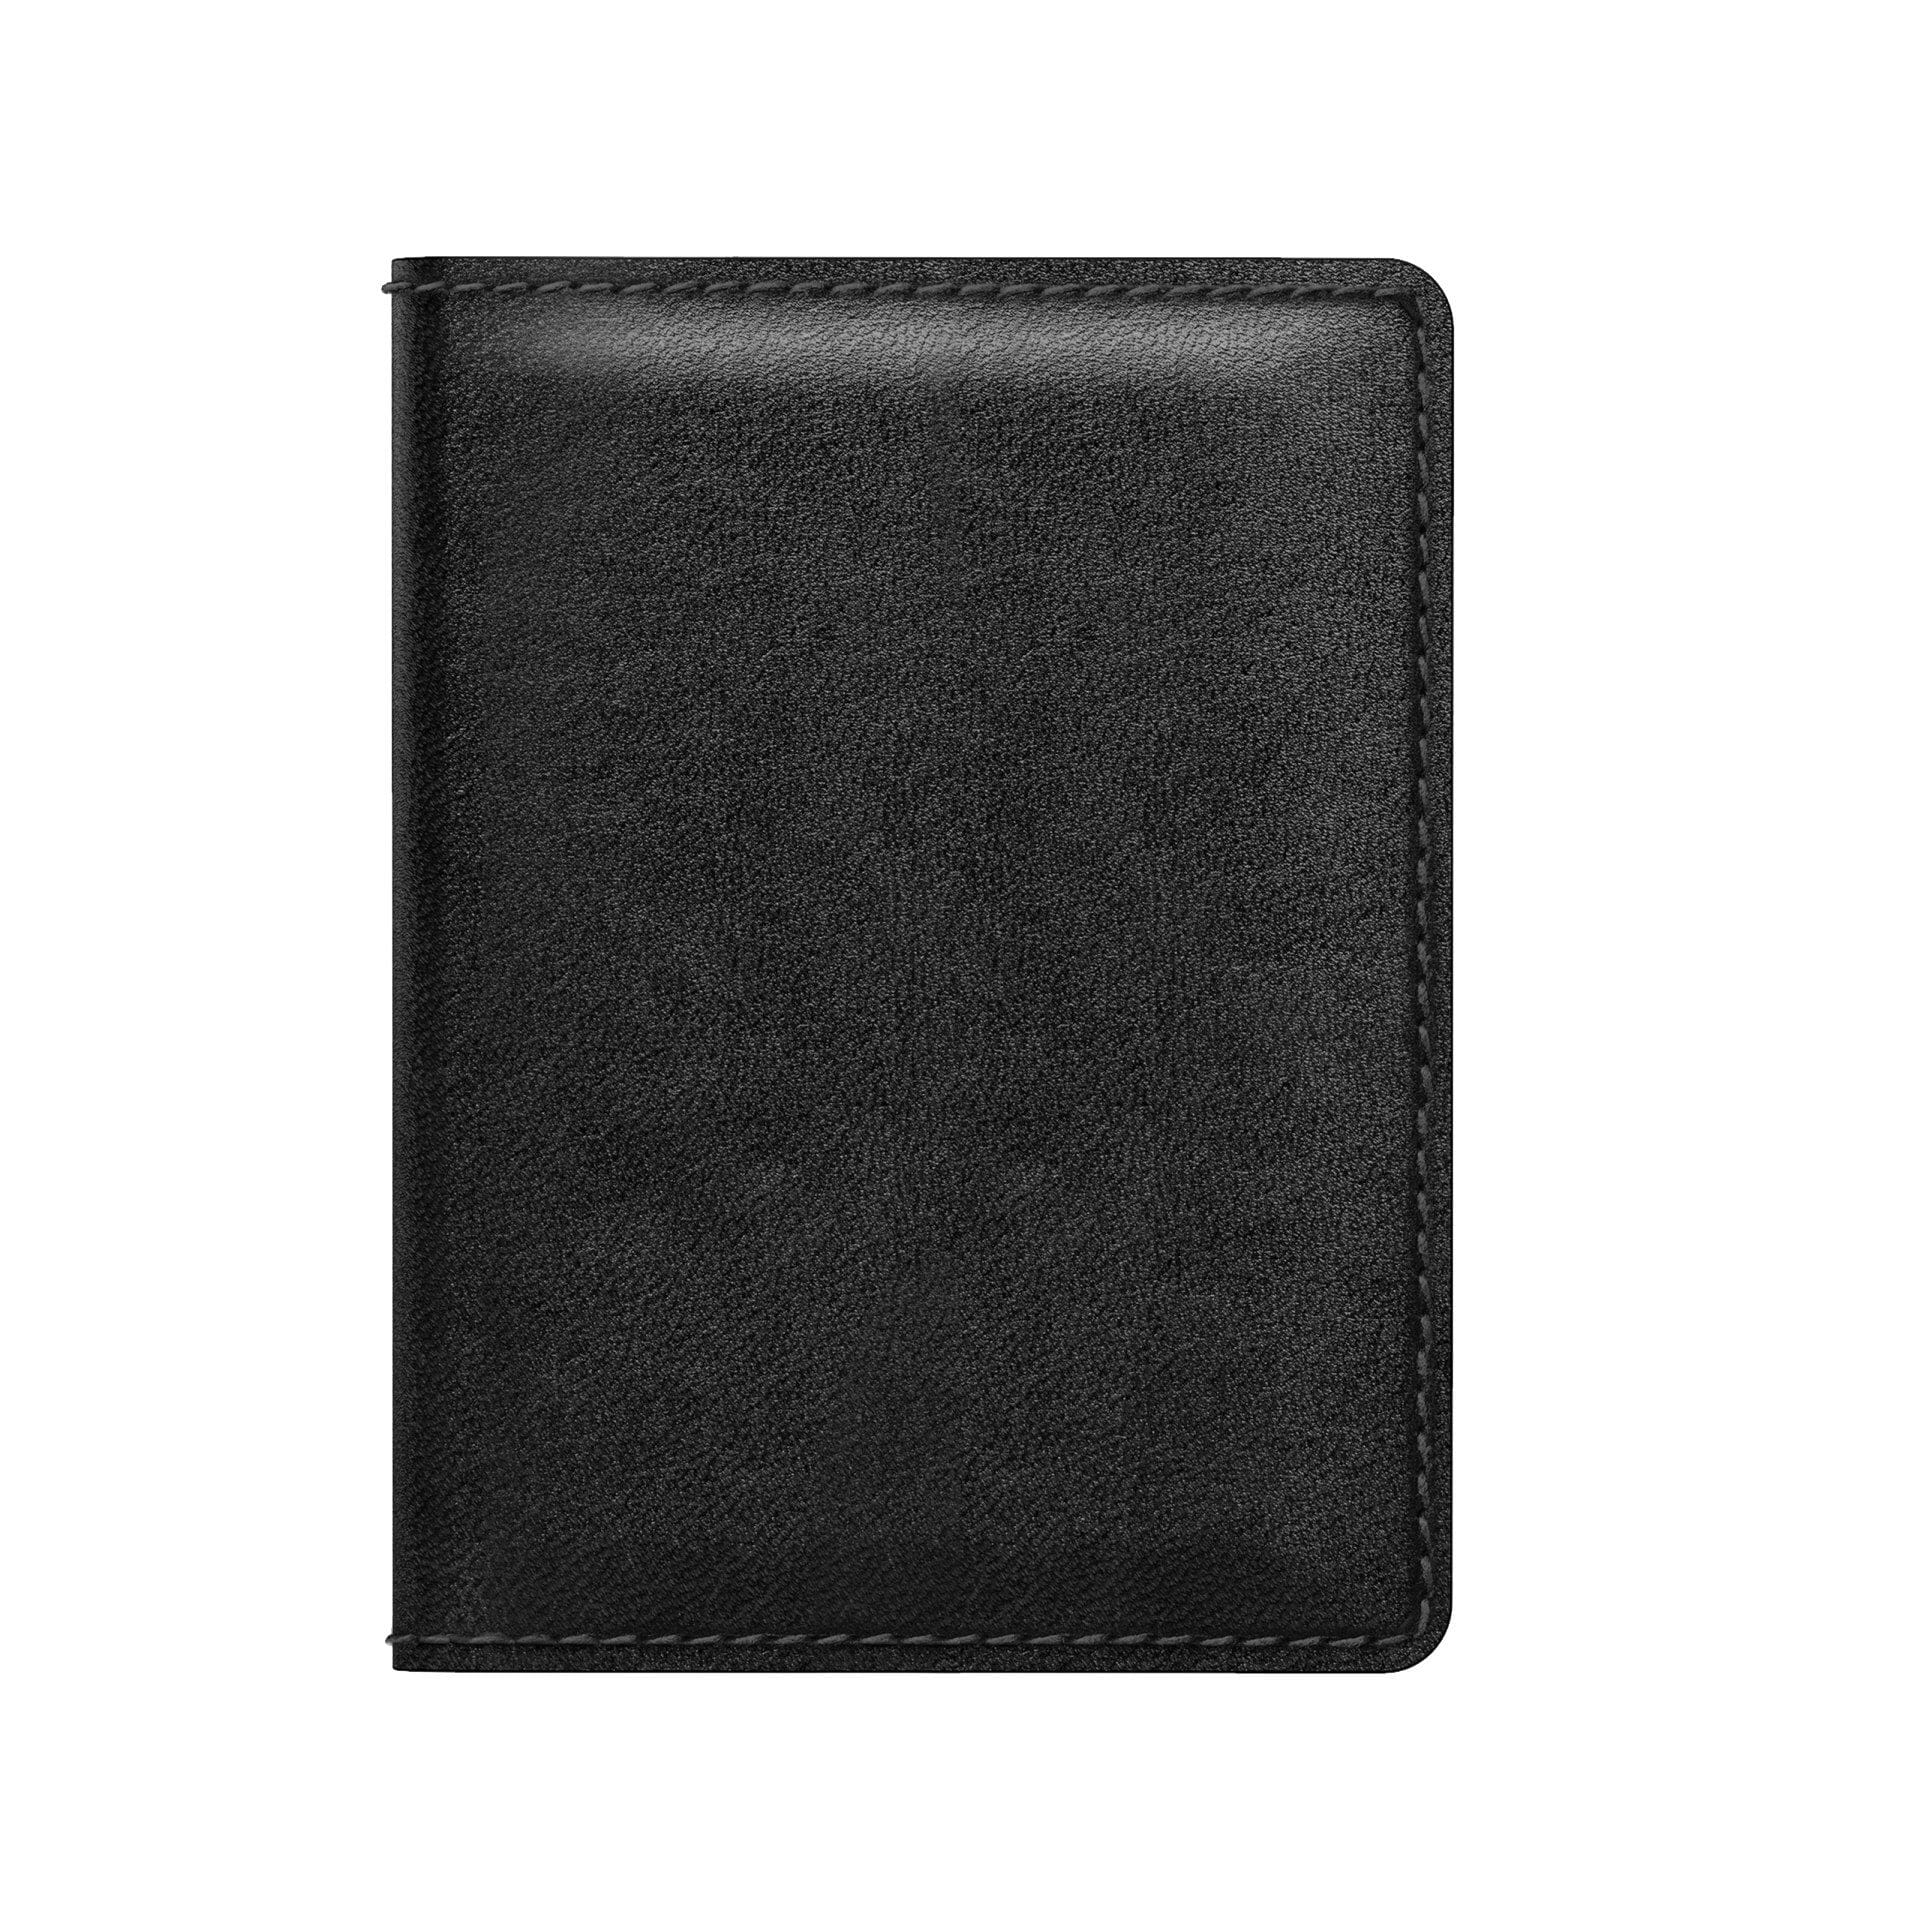 NOMAD Slim Horween Leather Wallet, Rustic Brown, Black Wallet NOMAD Black 